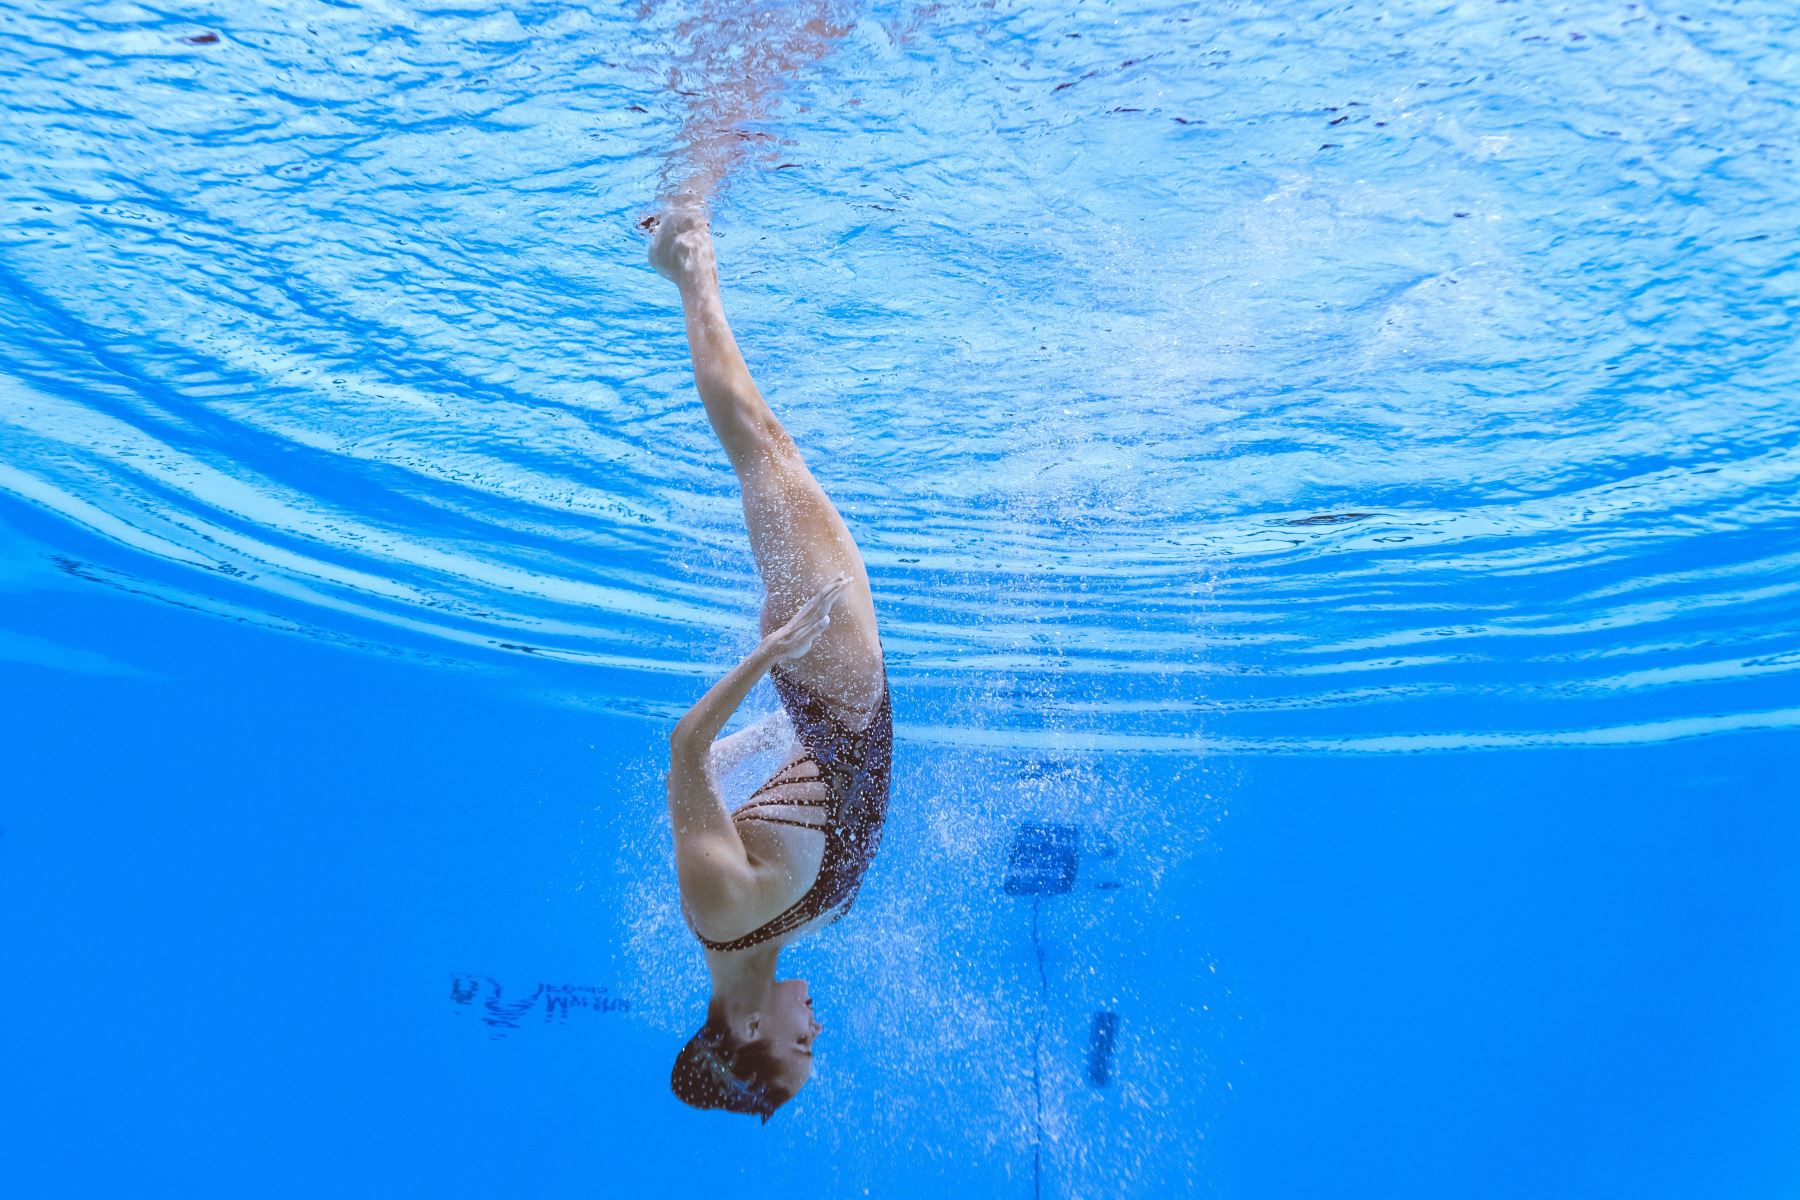 Ona Carbonell de España compite en el evento de natación artística durante el campeonato mundial 2019 en Corea del Sur. Foto: AFP